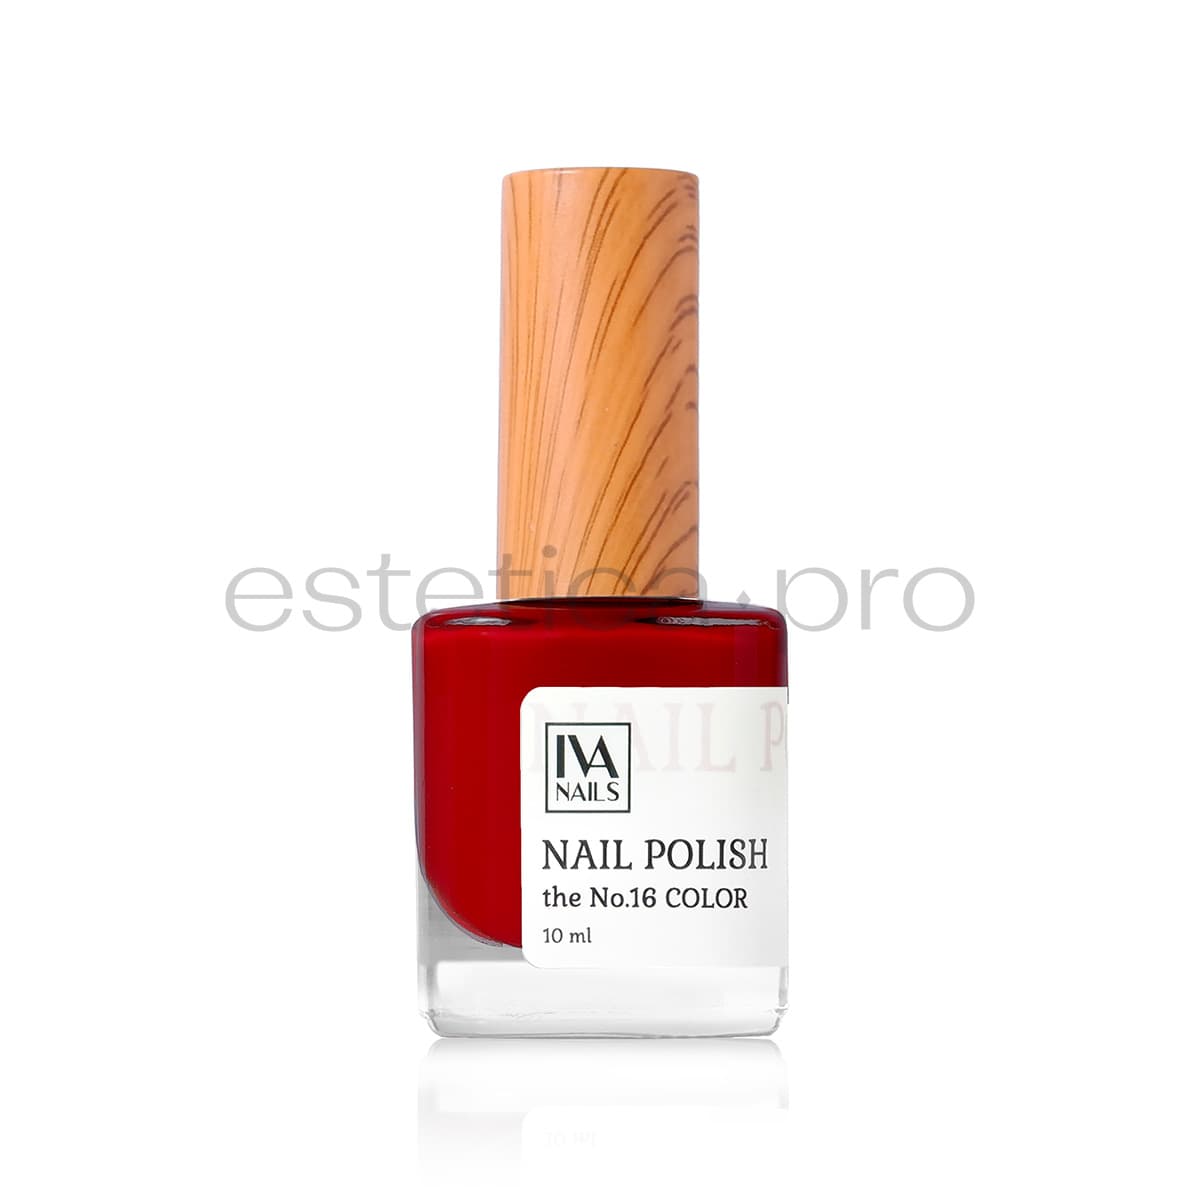 Лак для ногтей Iva Nails 16, 10мл.